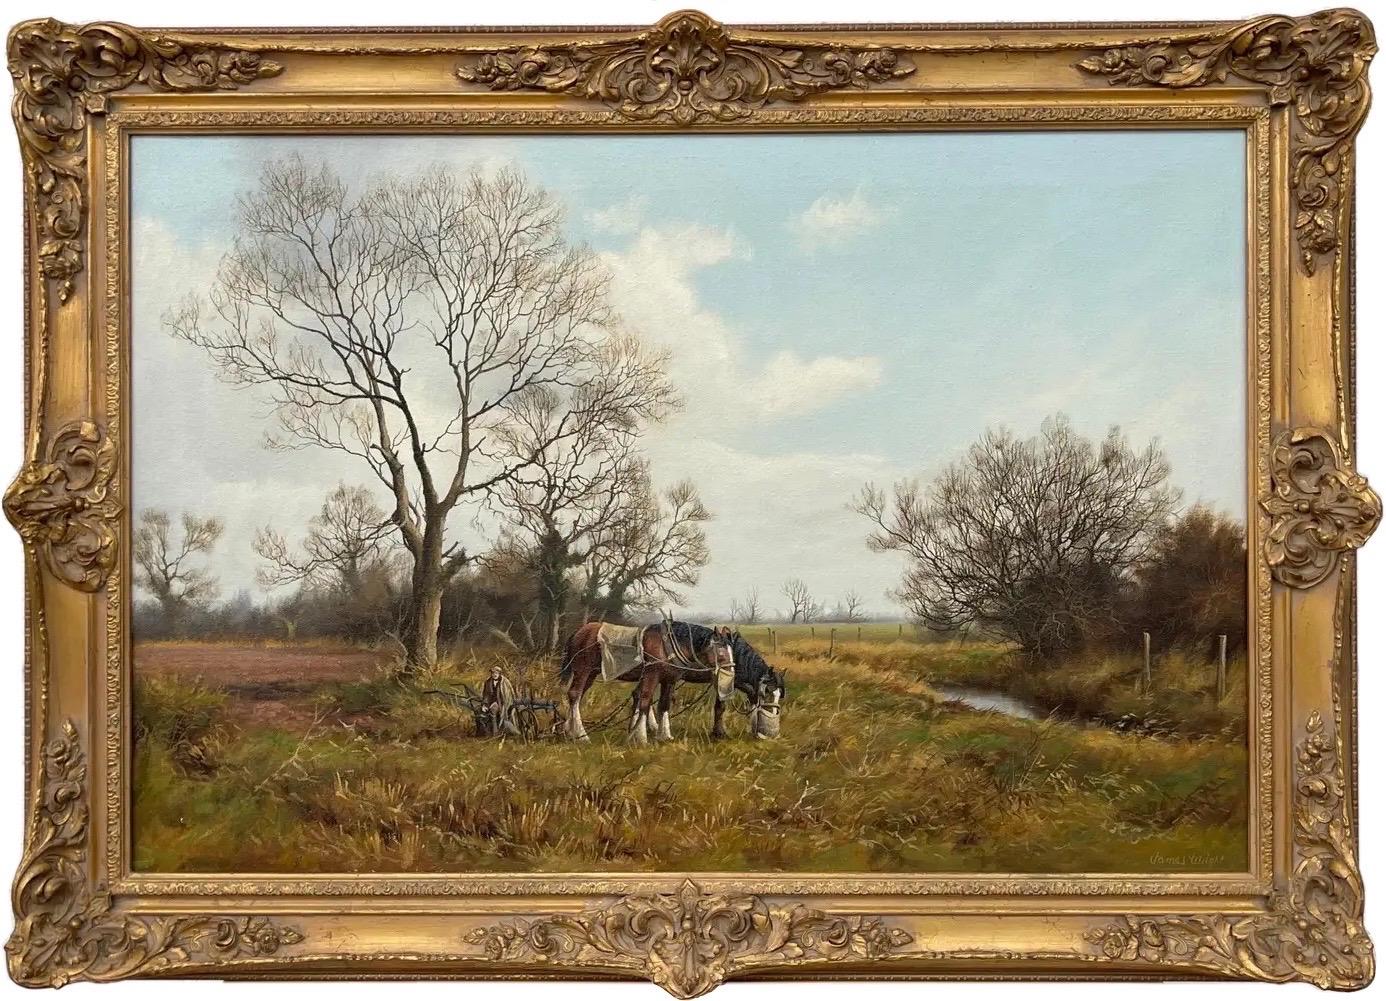 Animal Painting James Wright - Peinture de la campagne anglaise avec chevaux et charrue par un artiste Modern British